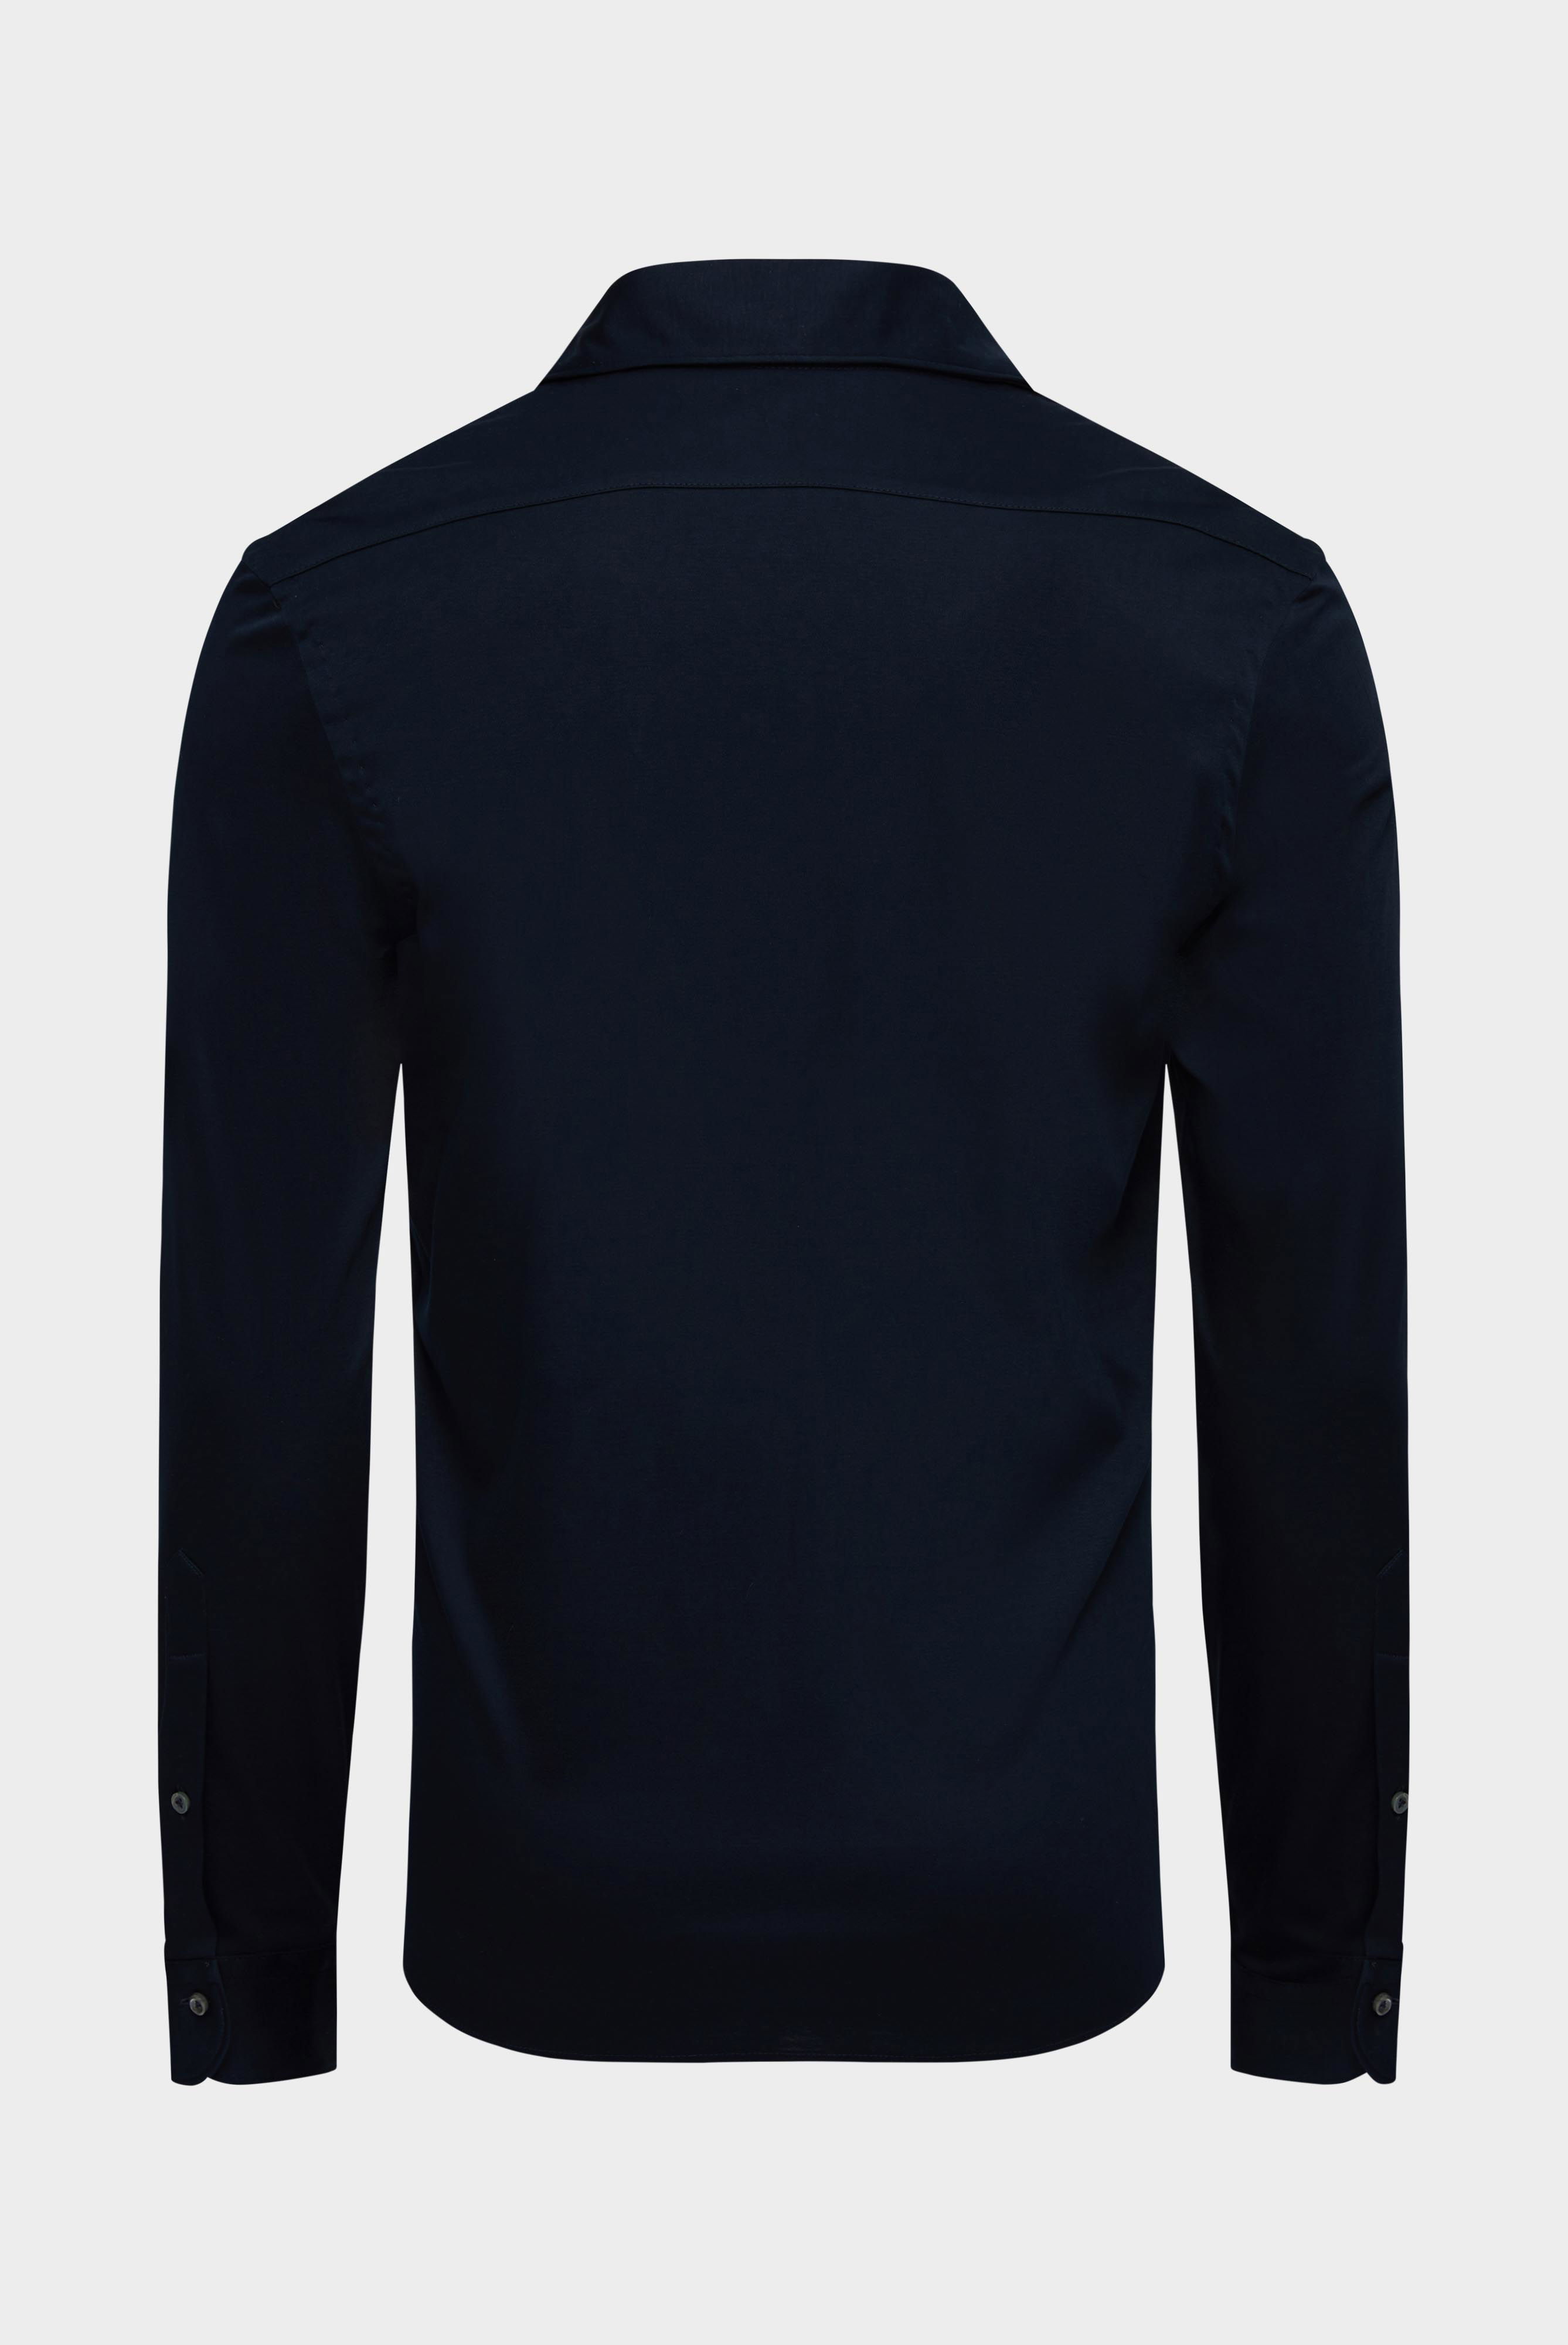 Jersey Hemden+Jersey Hemd aus Schweizer Baumwolle Slim Fit+20.1682.UC.180031.790.XS